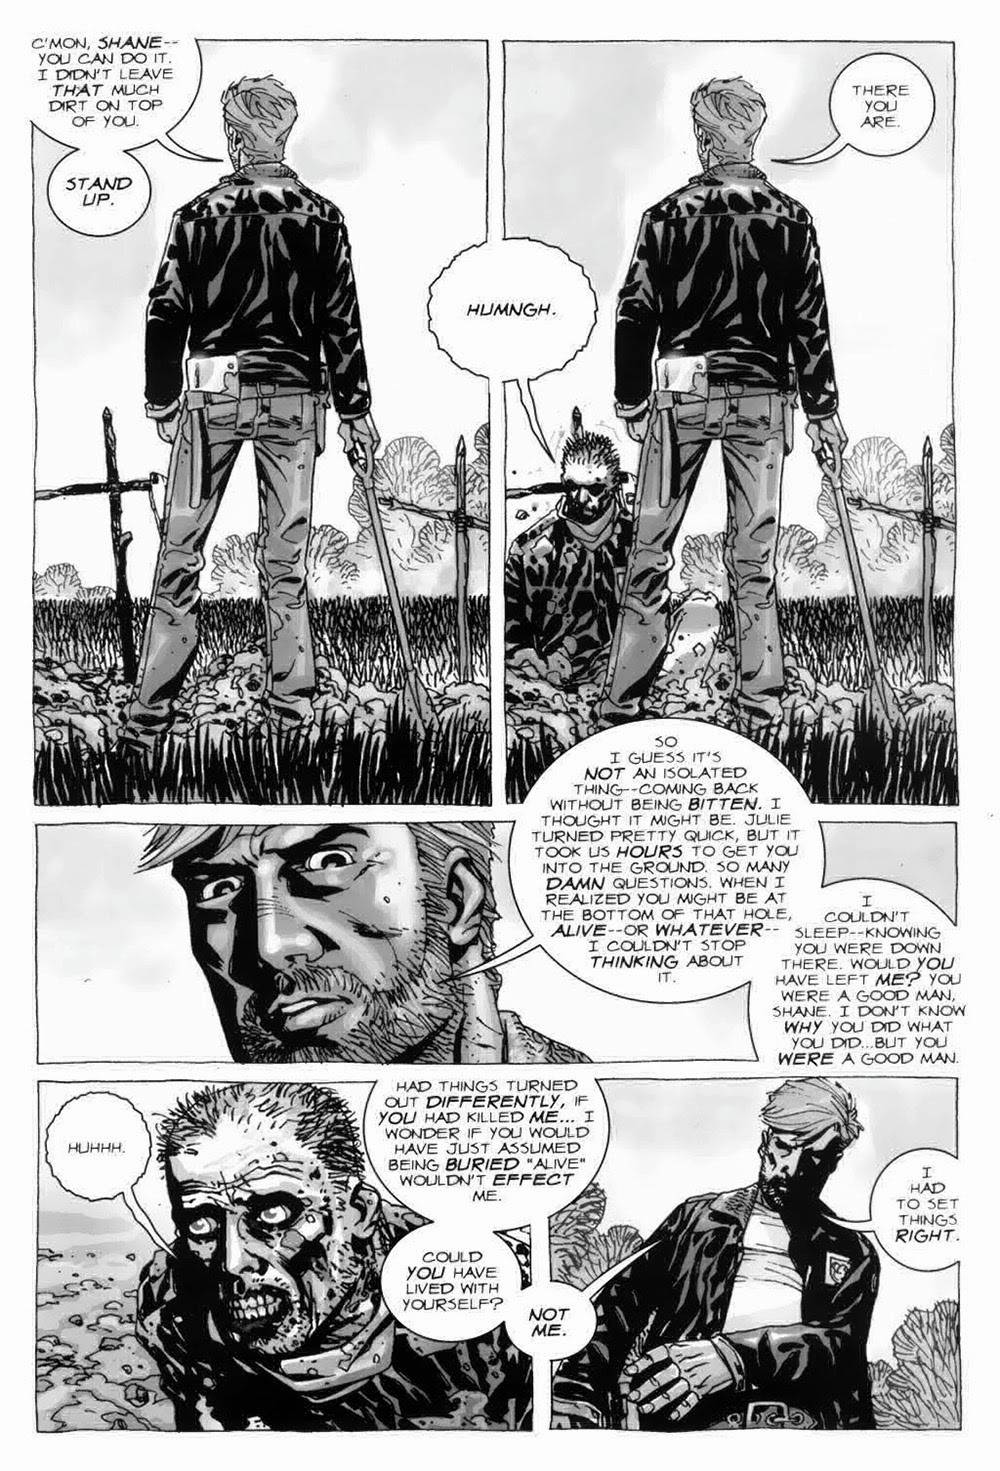 «Ходячие мертвецы» — очень мрачный комикс, насилие показано во всех неприглядных деталях. Источник: Image Comics